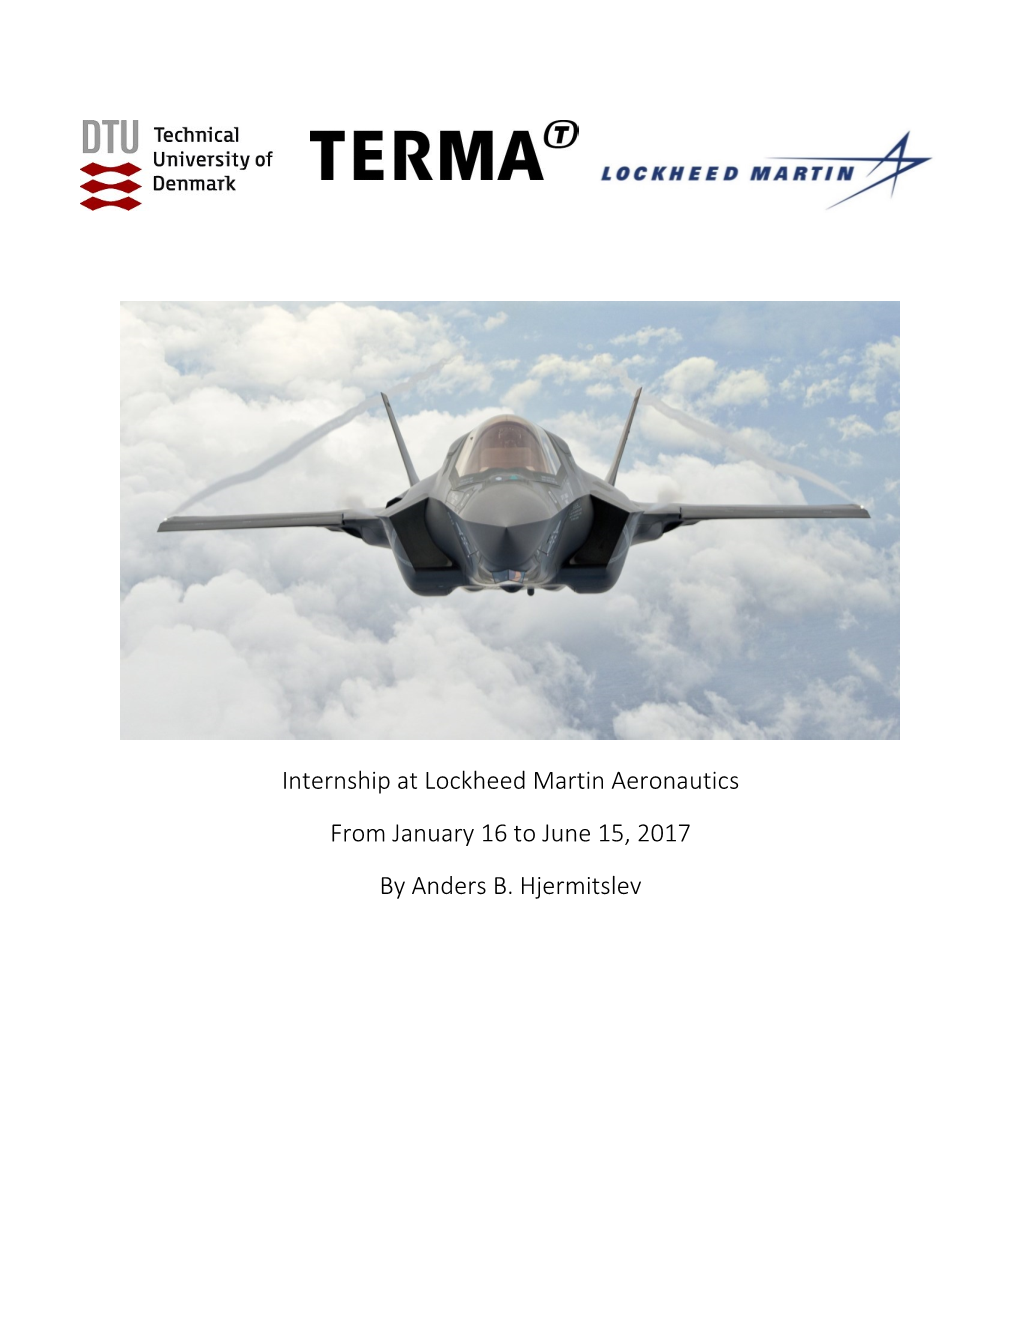 Internship at Lockheed Martin Aeronautics from January 16 to June 15, 2017 by Anders B